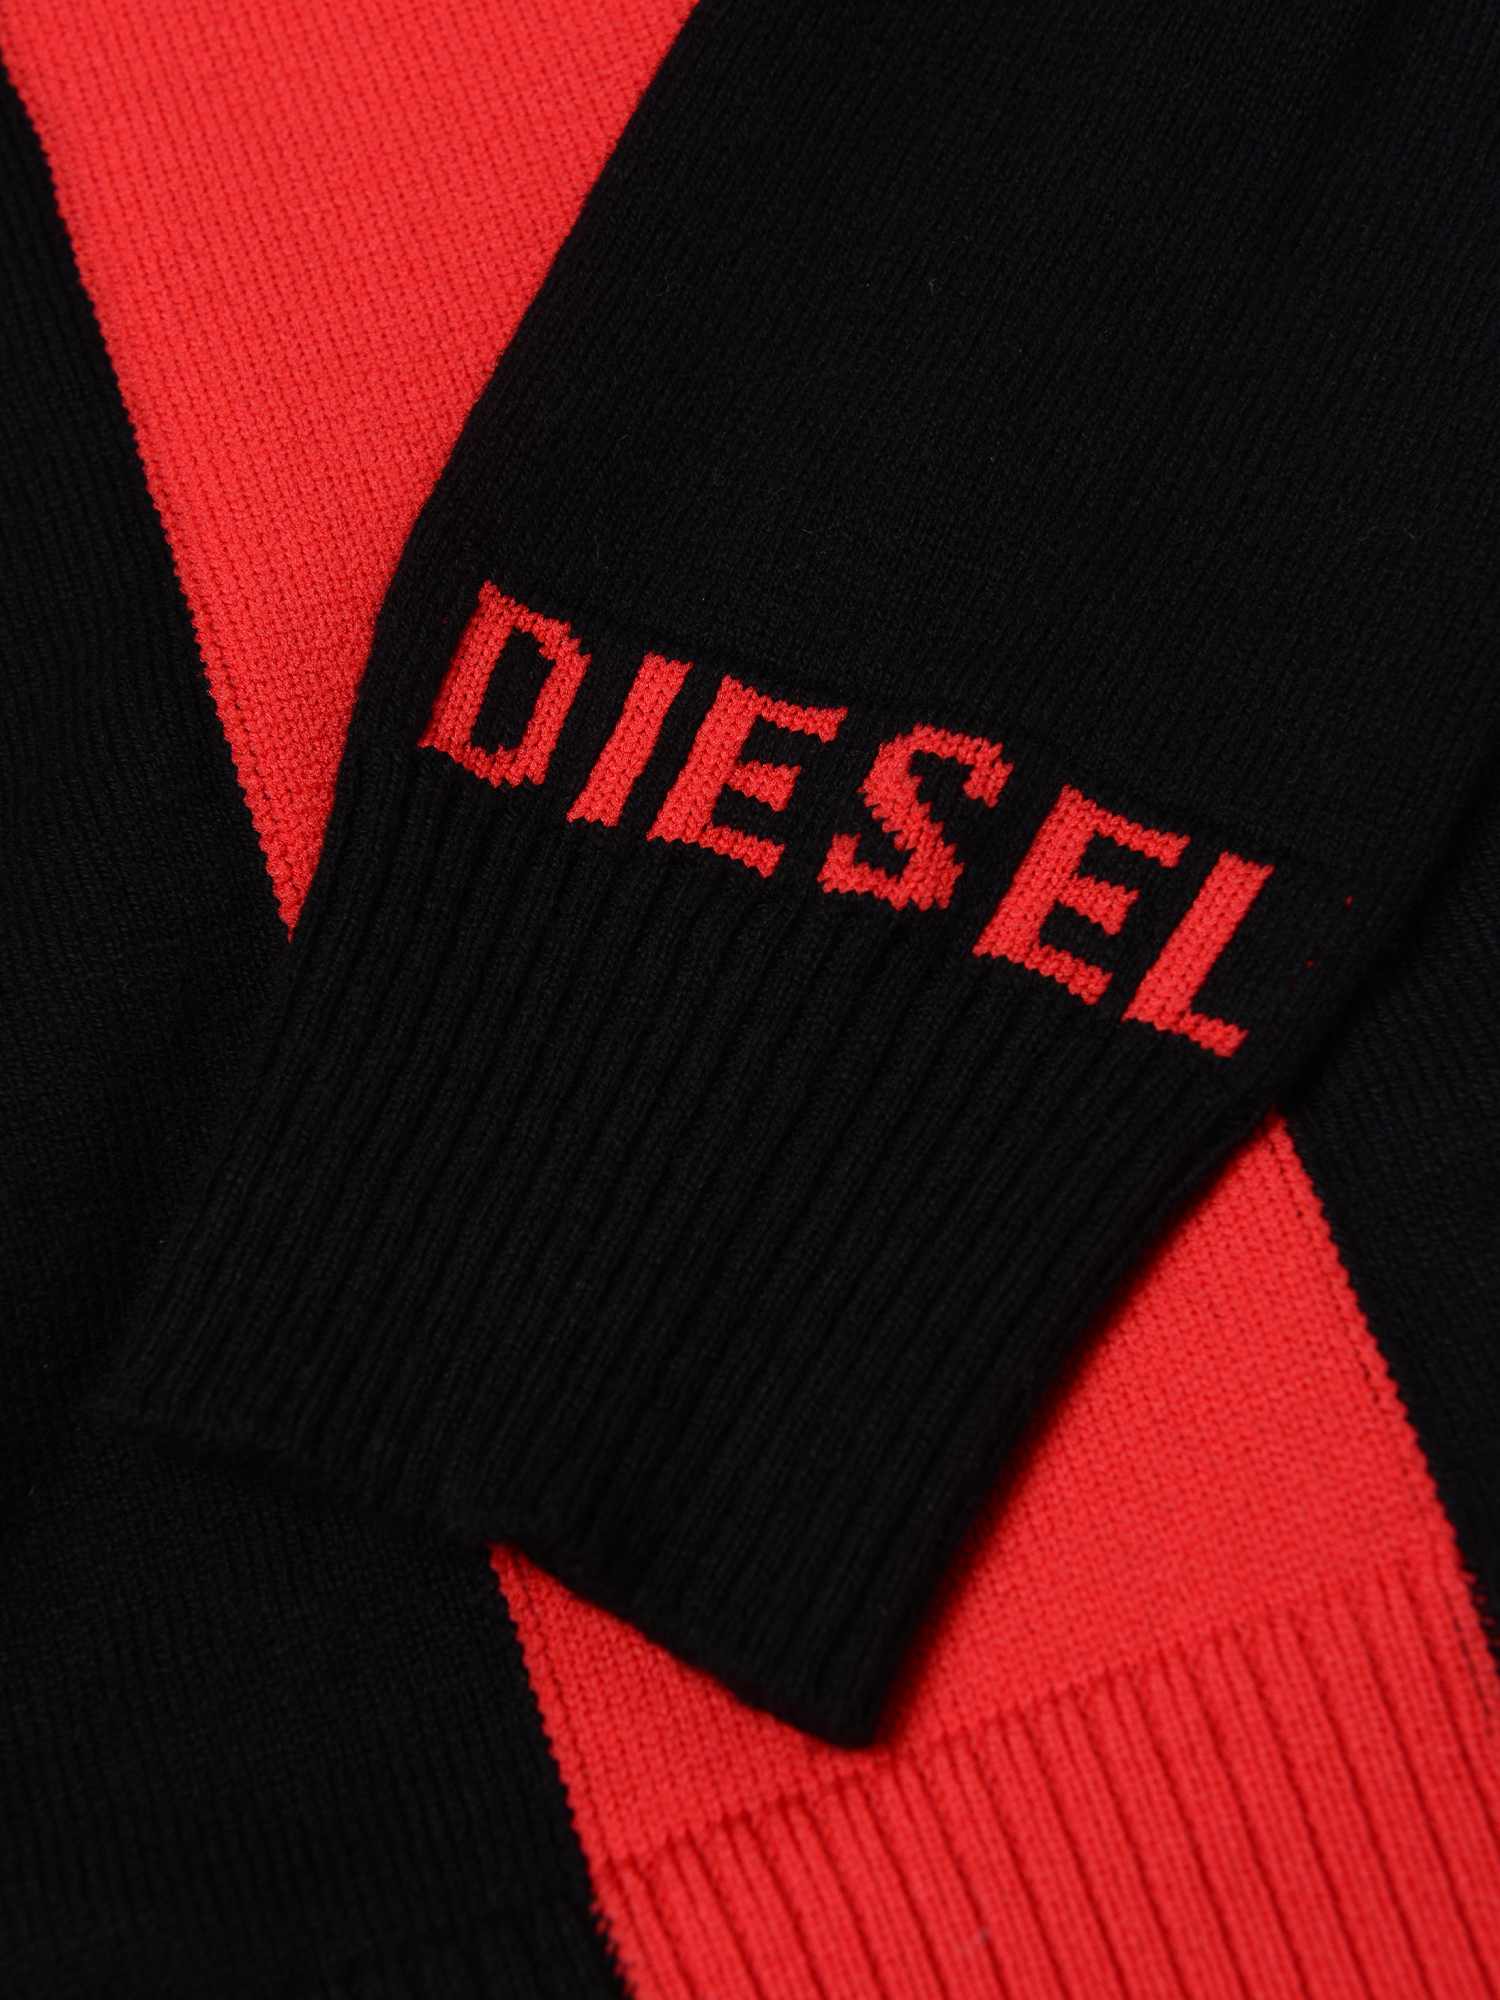 Diesel - KTAPEX, Black/Red - Image 3